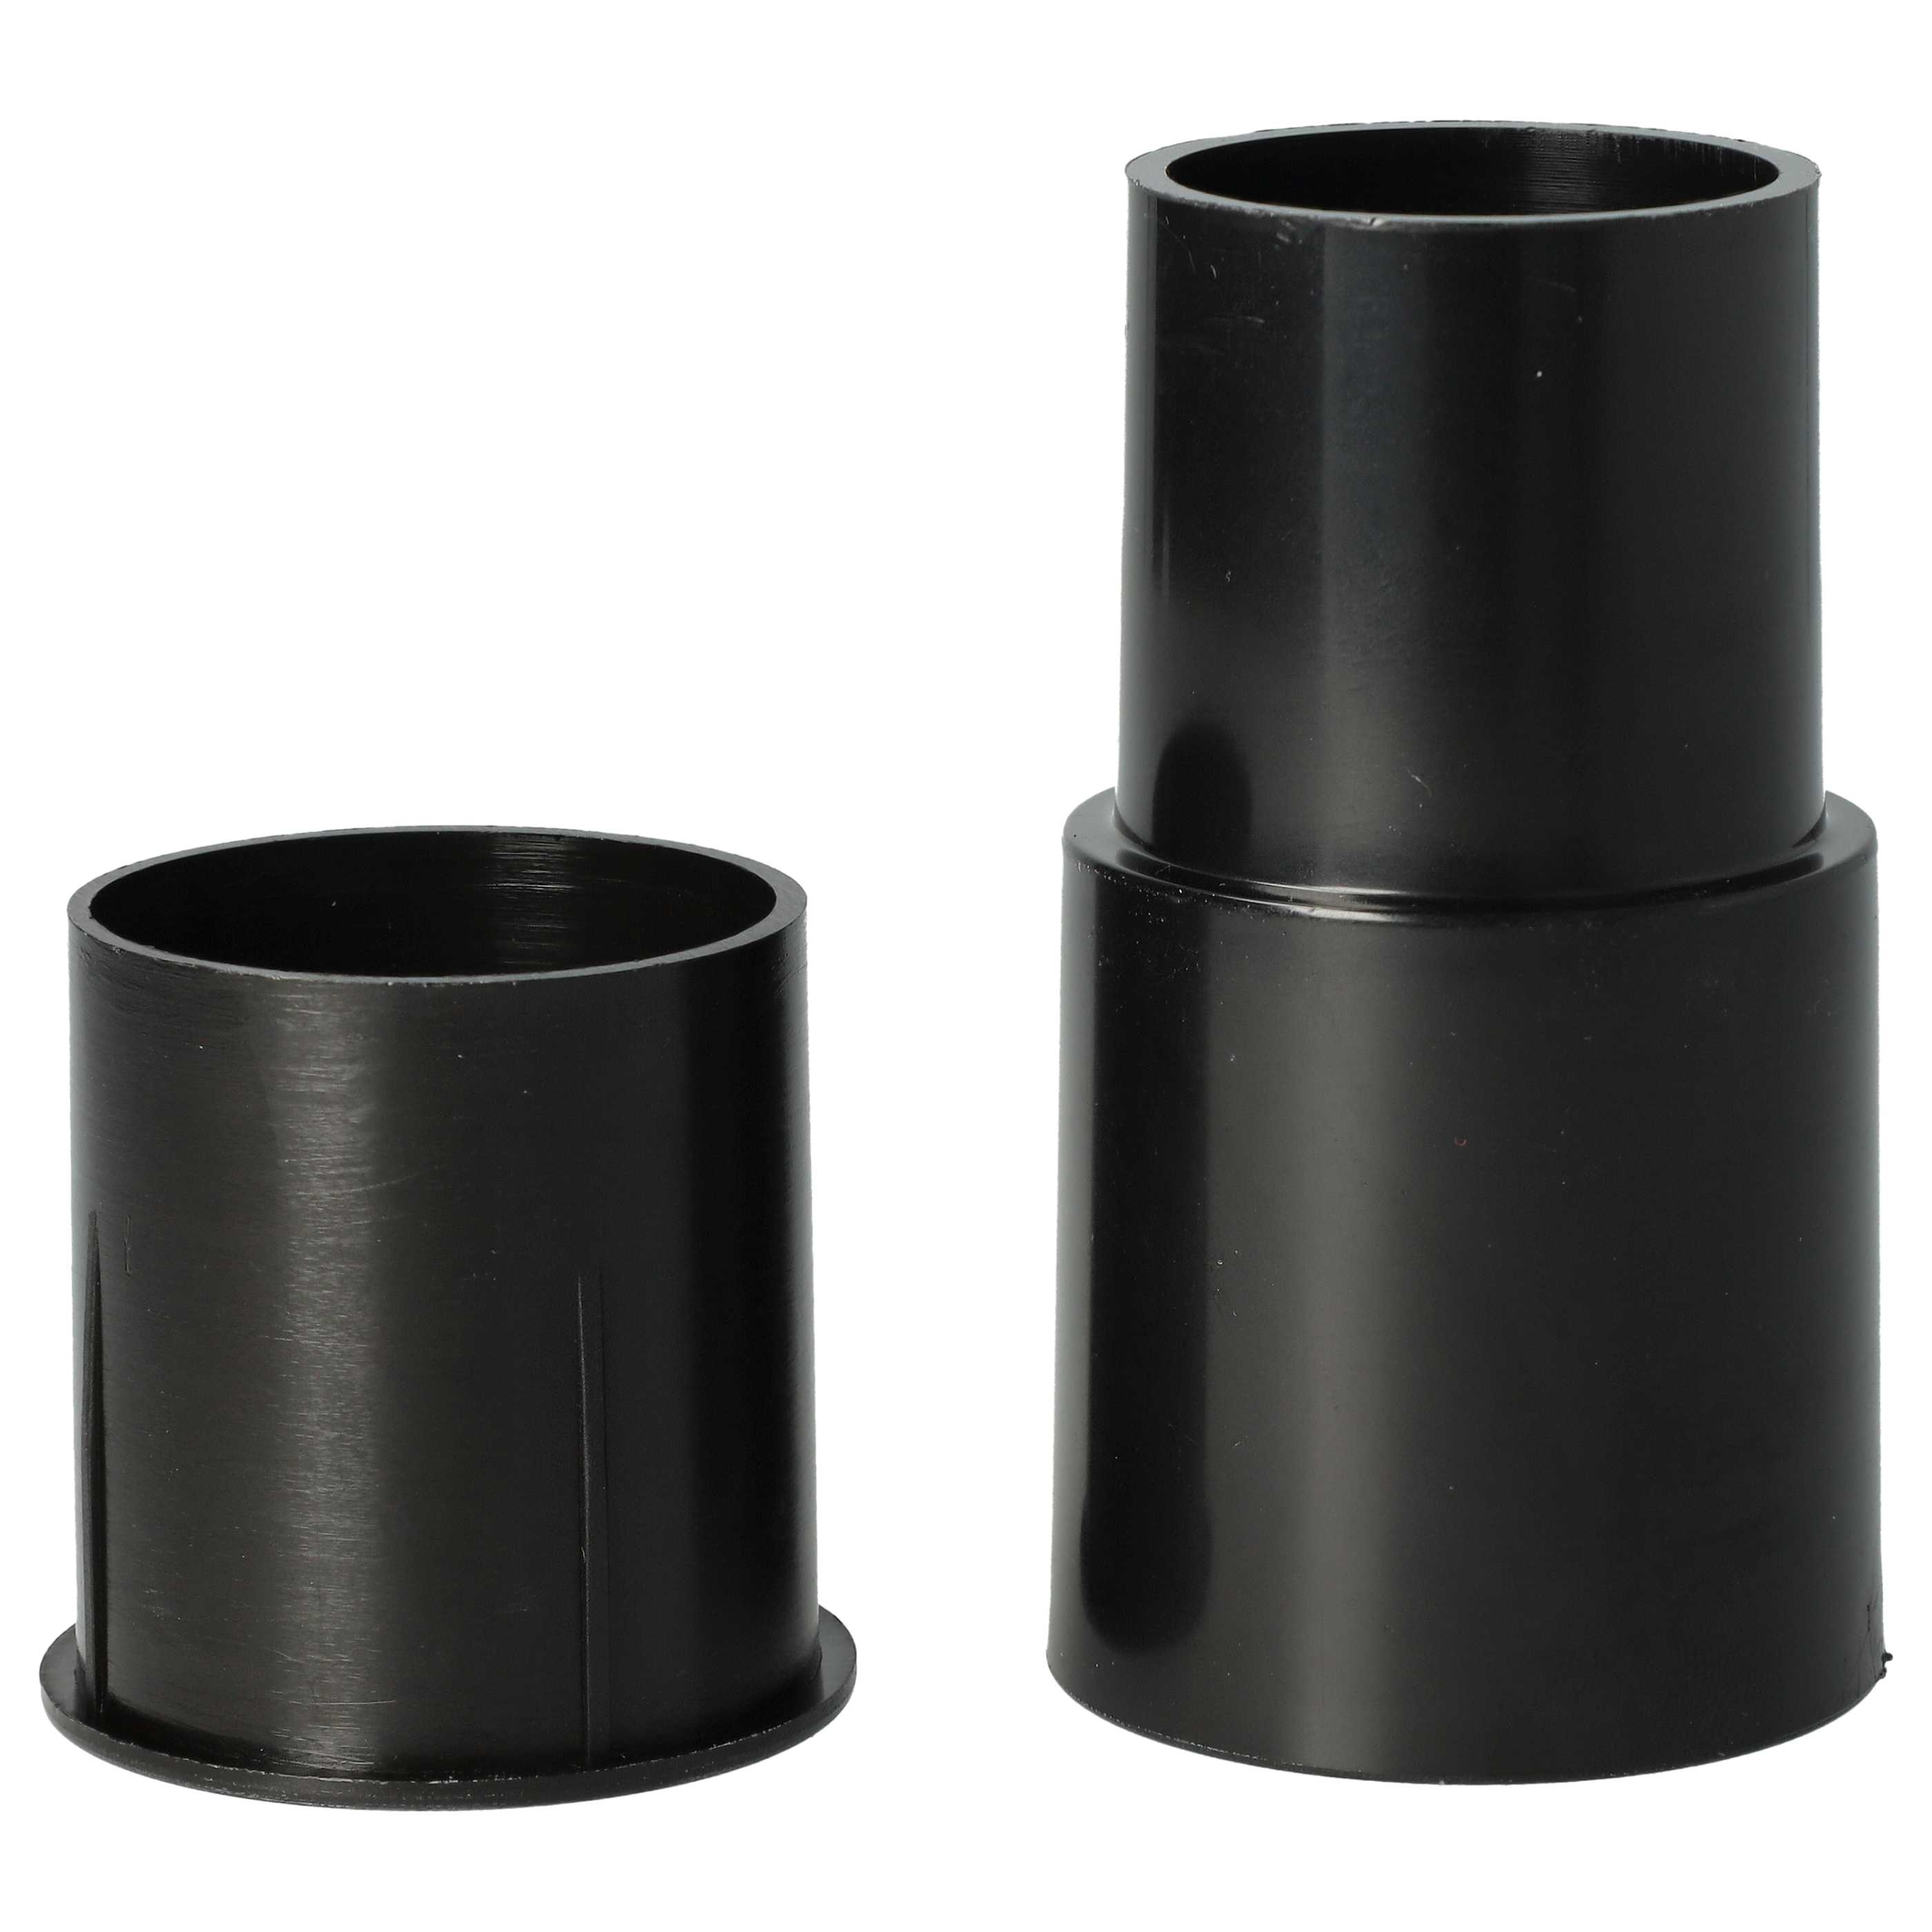 2x Adattatore per diversi aspirapolvere come AEG, Philips ecc - ⌀ 32 auf 35 mm, nero